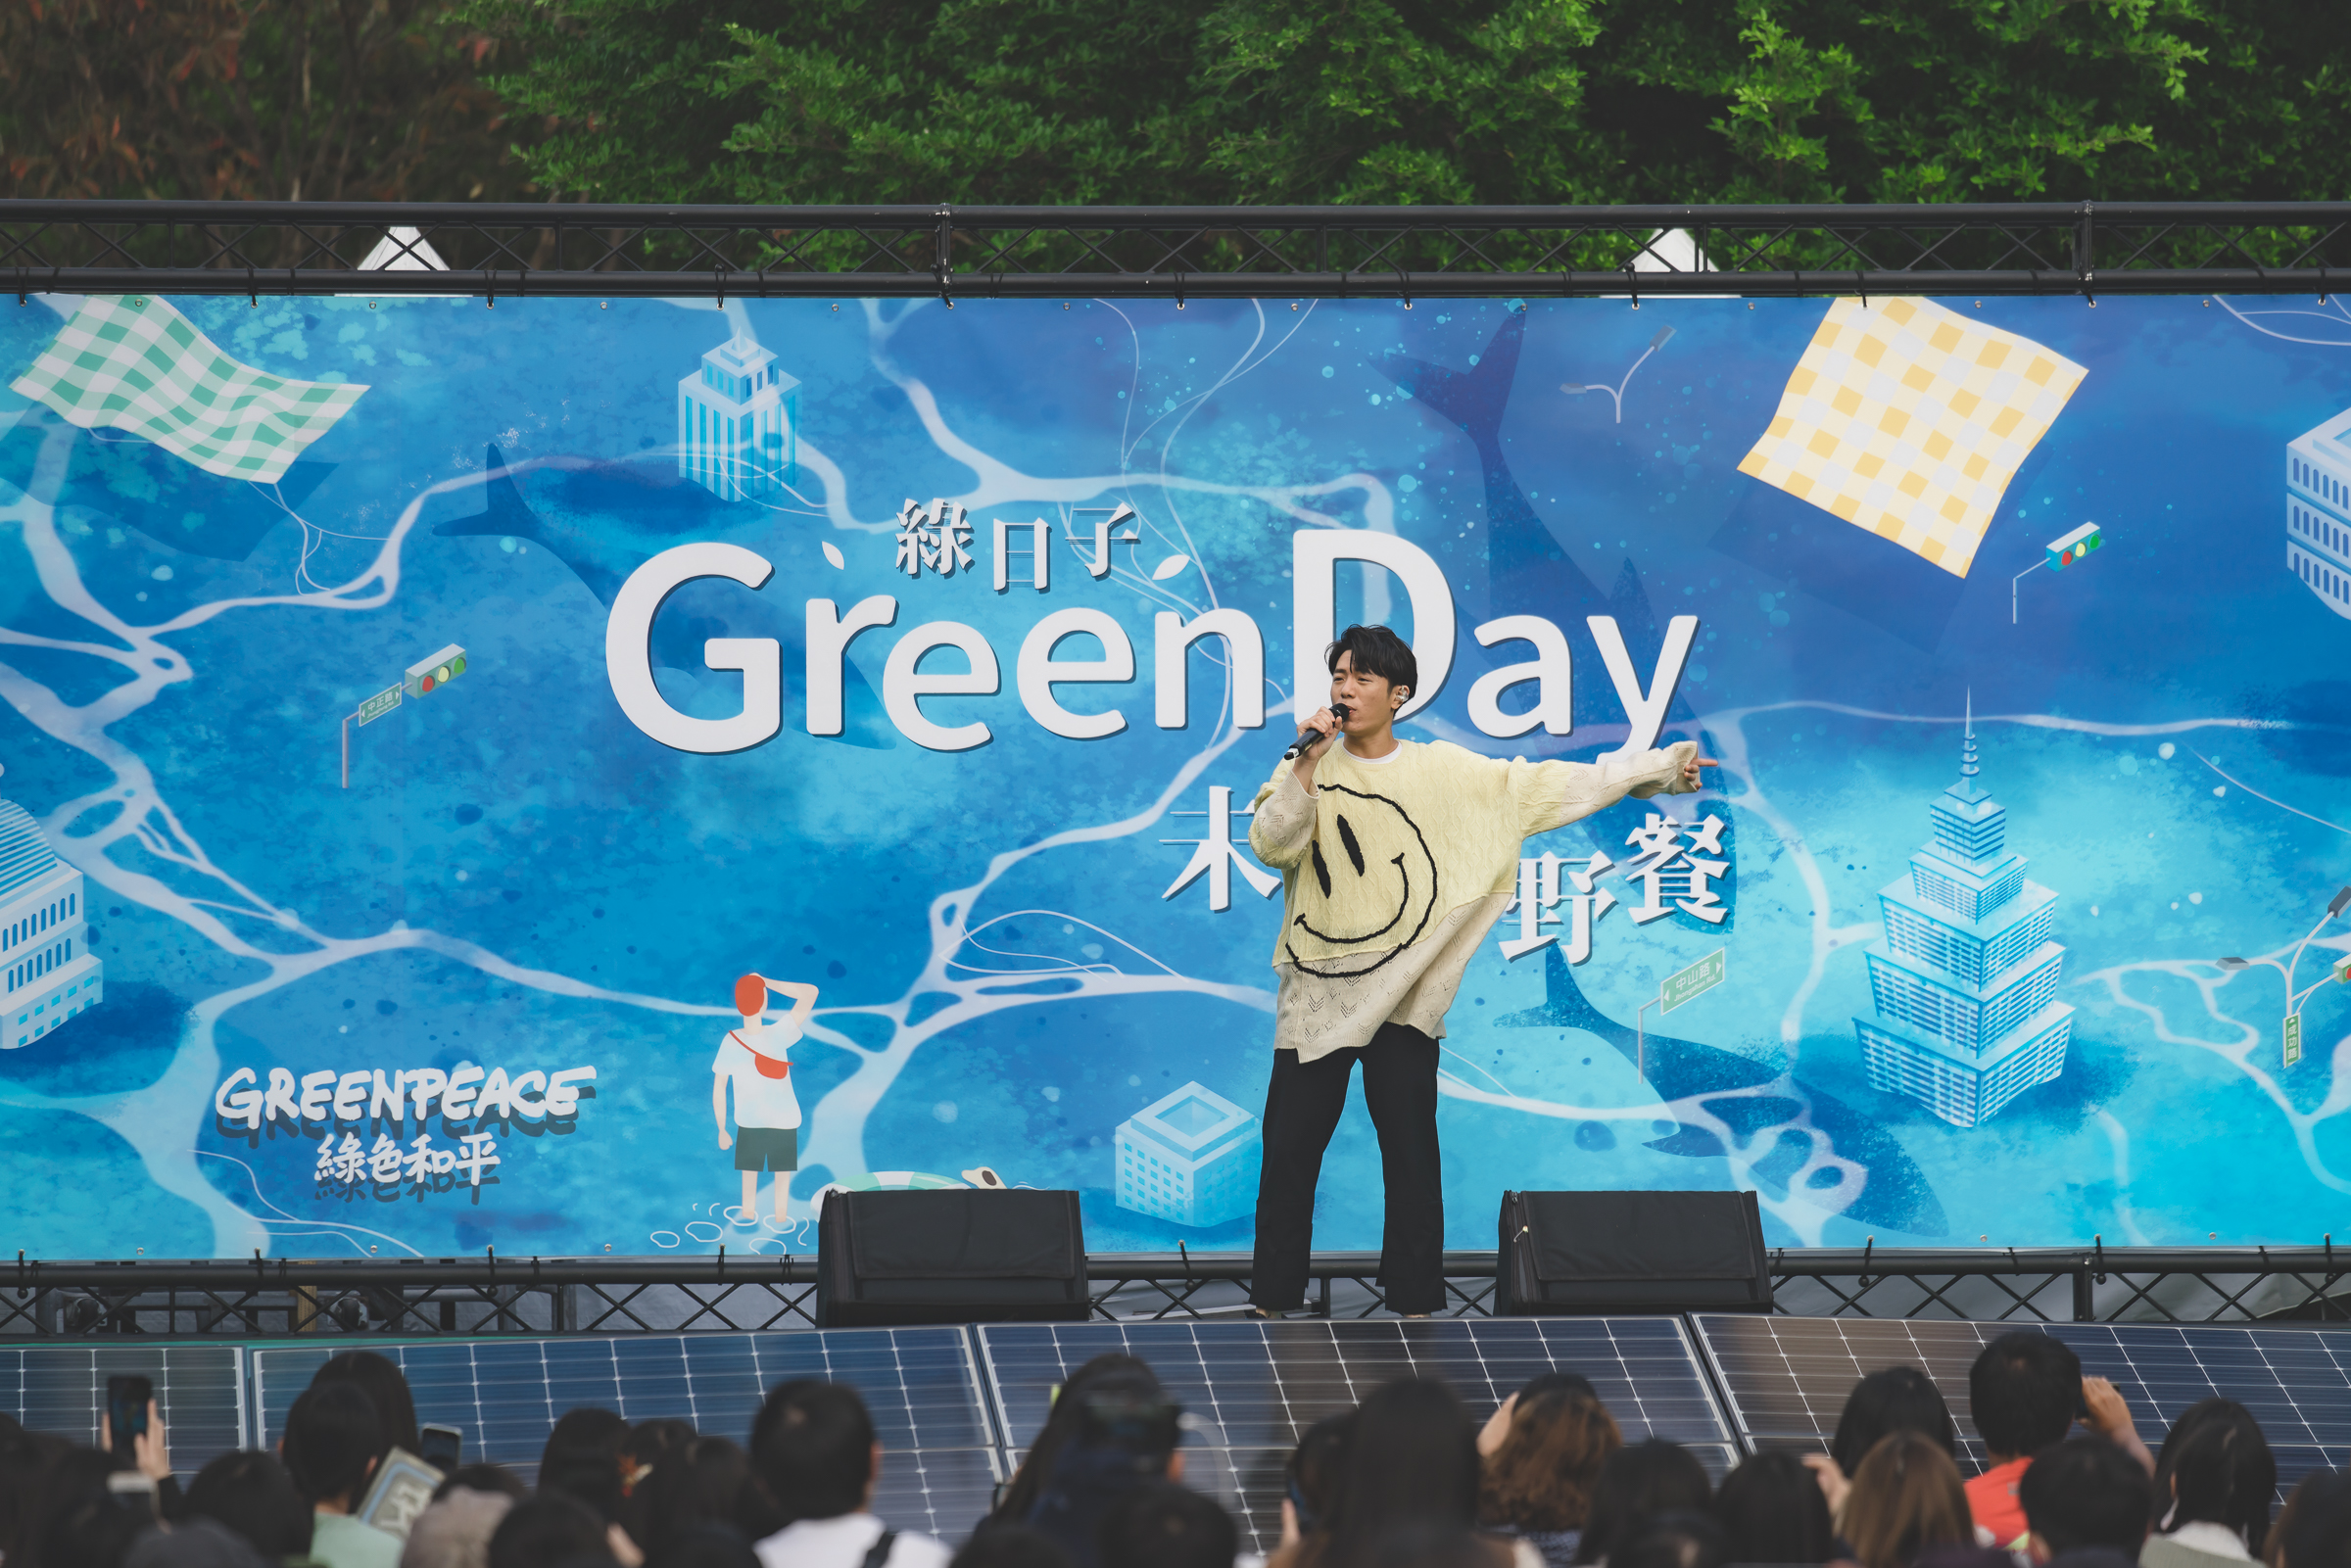 為使環保議題觸及更廣，綠色和平邀請多名藝人在「Green Day 綠‧日子」野餐演出，呼籲響應永續生活，音樂會的供電由舞臺前的太陽能板提供。